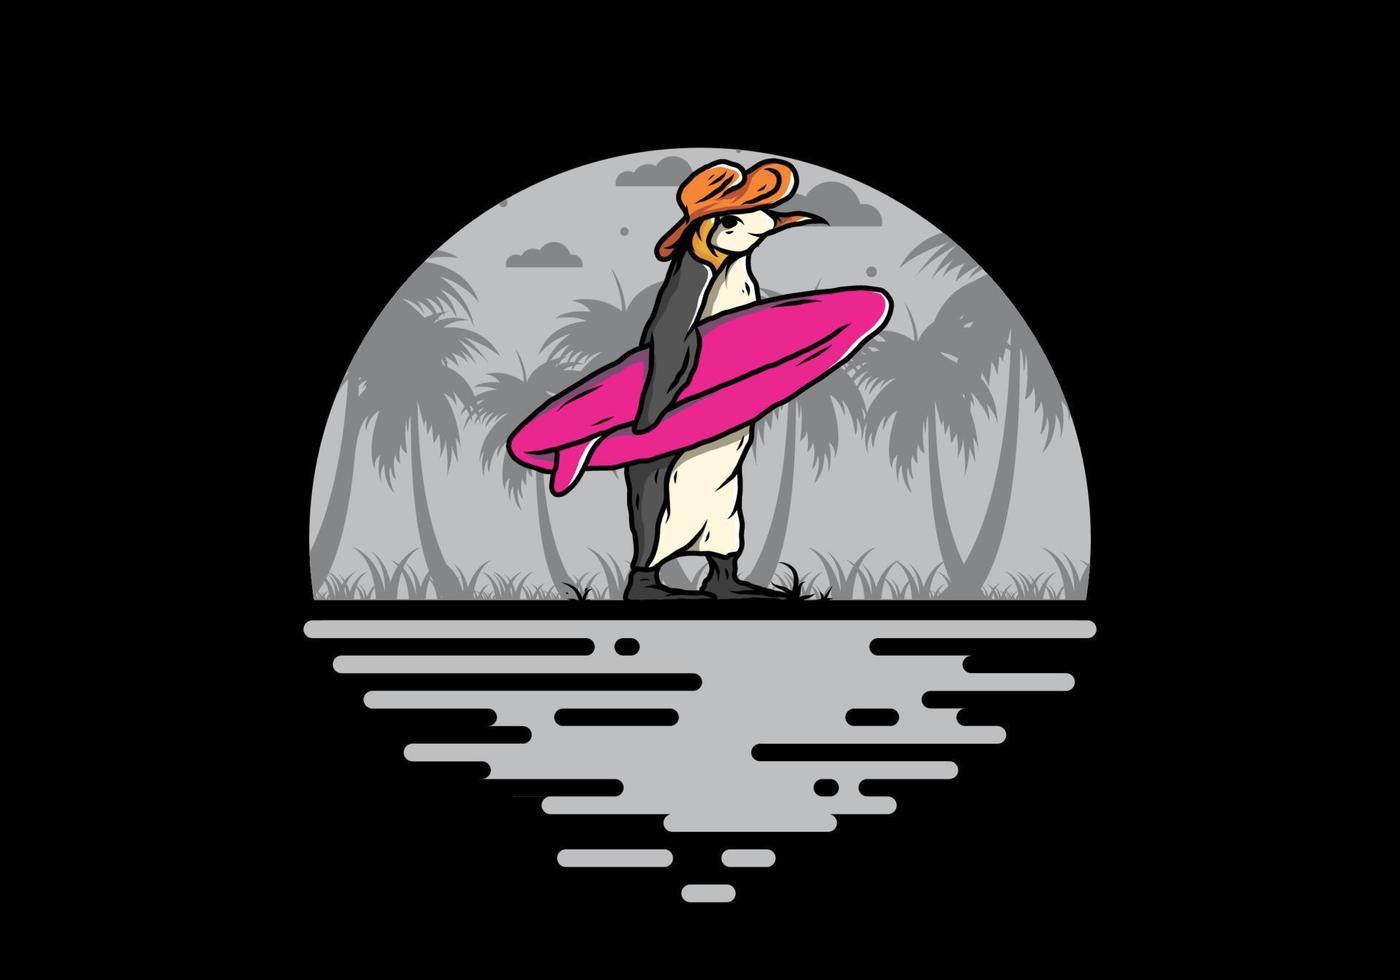 pingüino lindo que lleva una tabla de surf en la ilustración de la playa vector